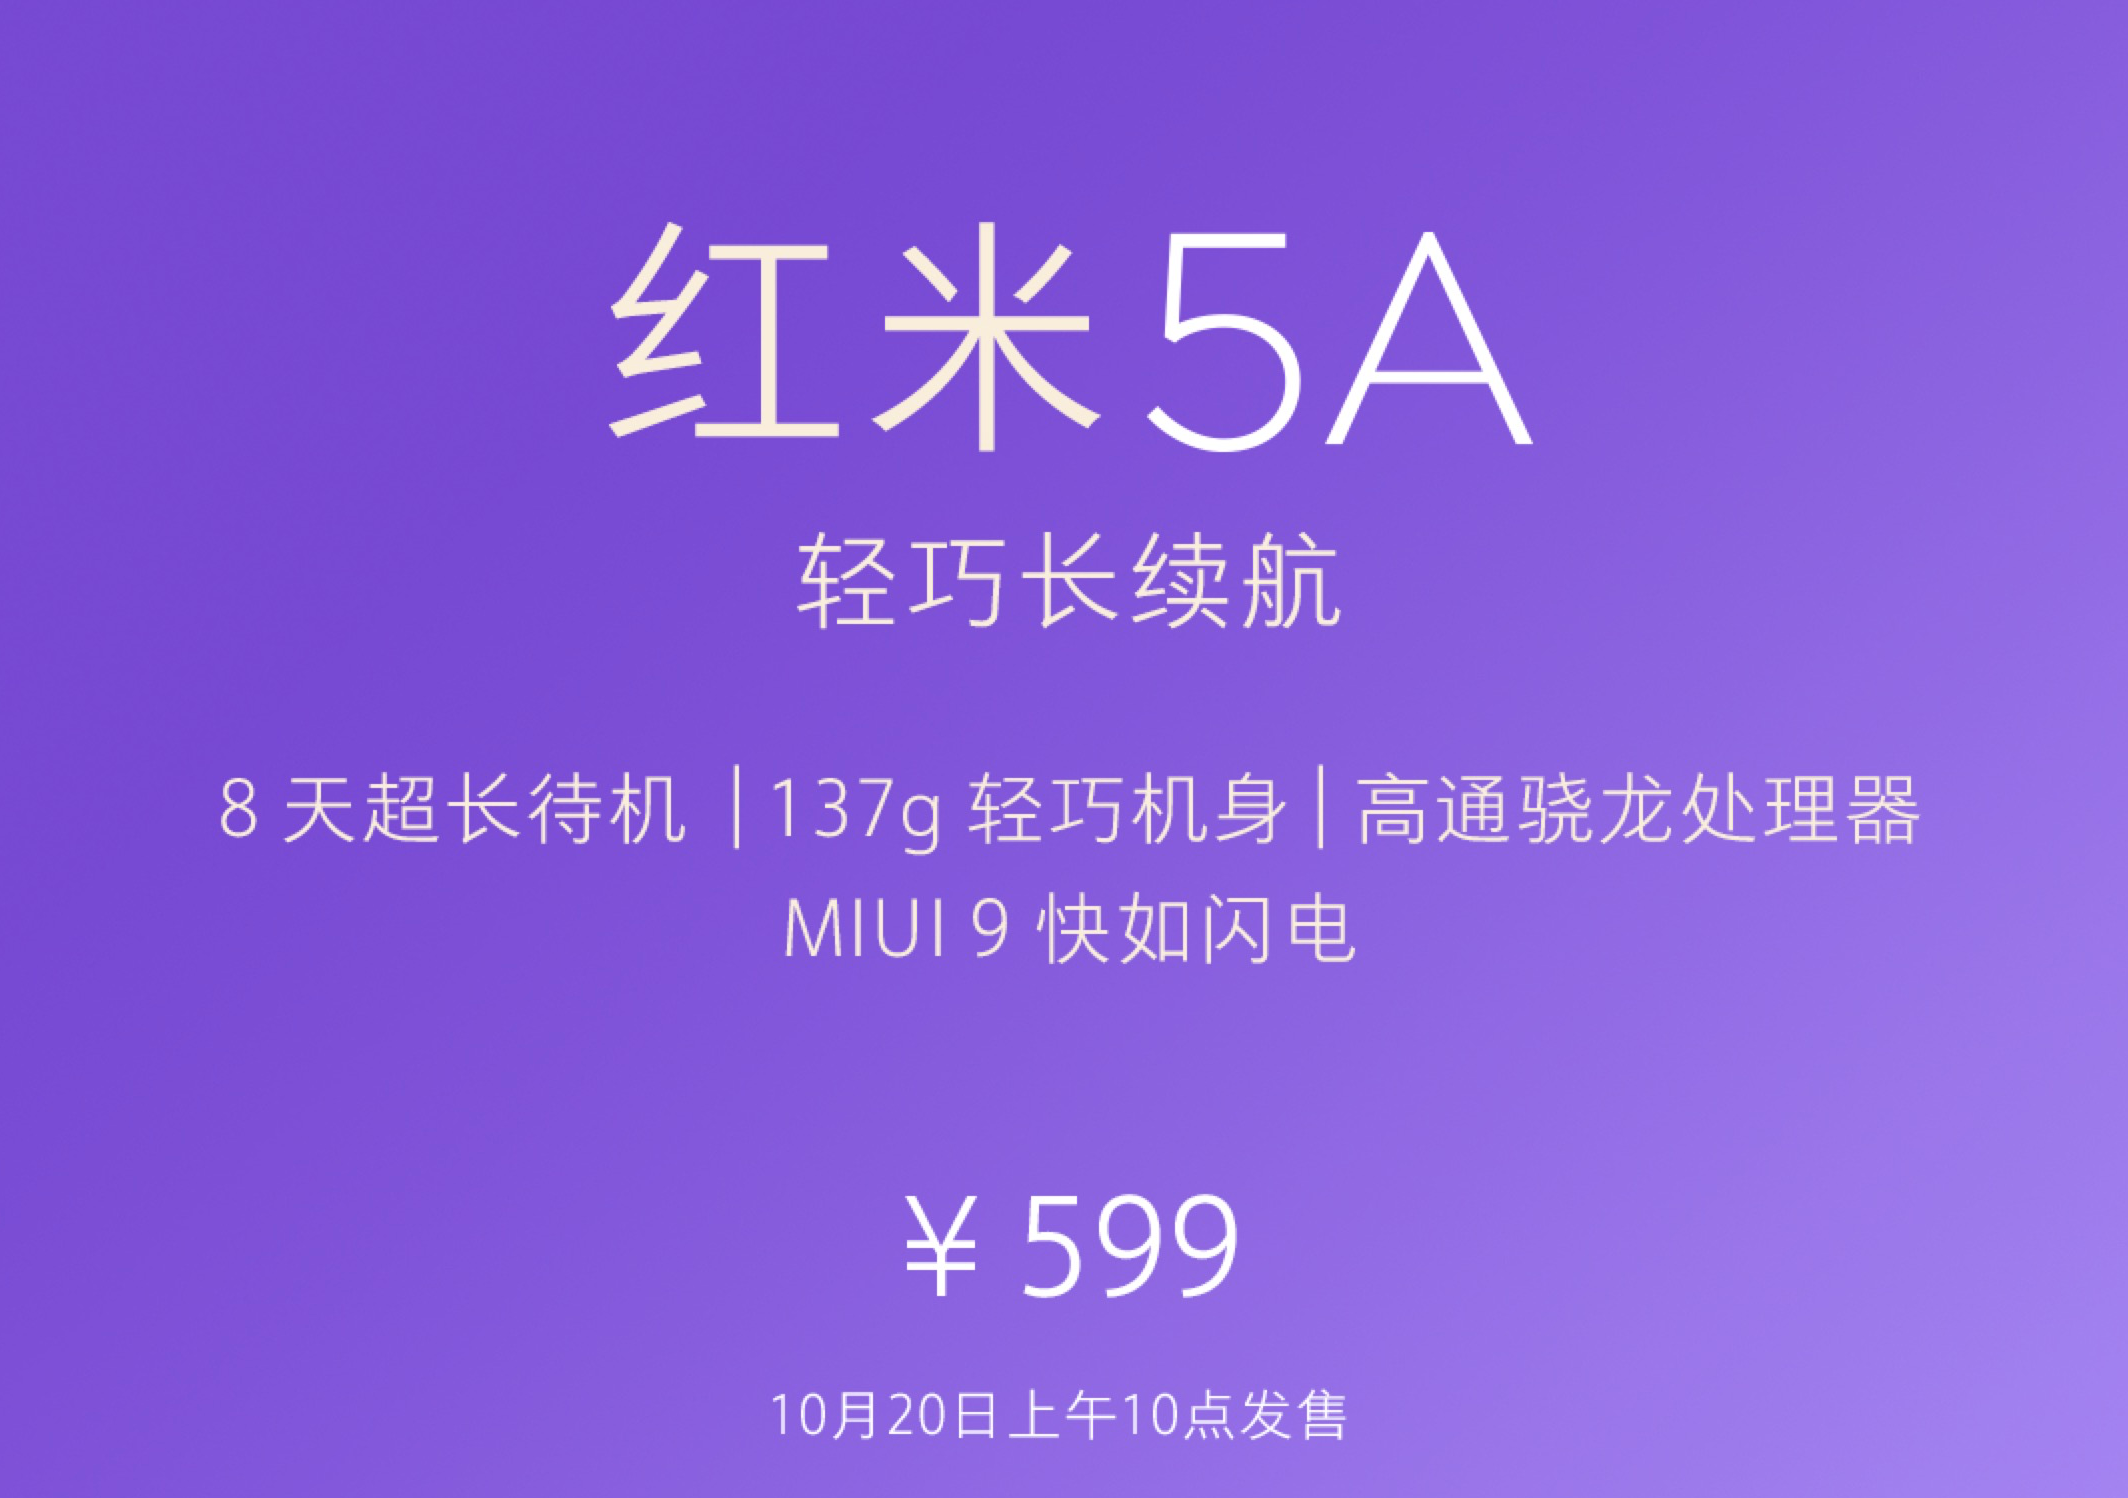 小米手机不张扬公布红米5A，2 16G 骁龙425可关机8天，仅售599元